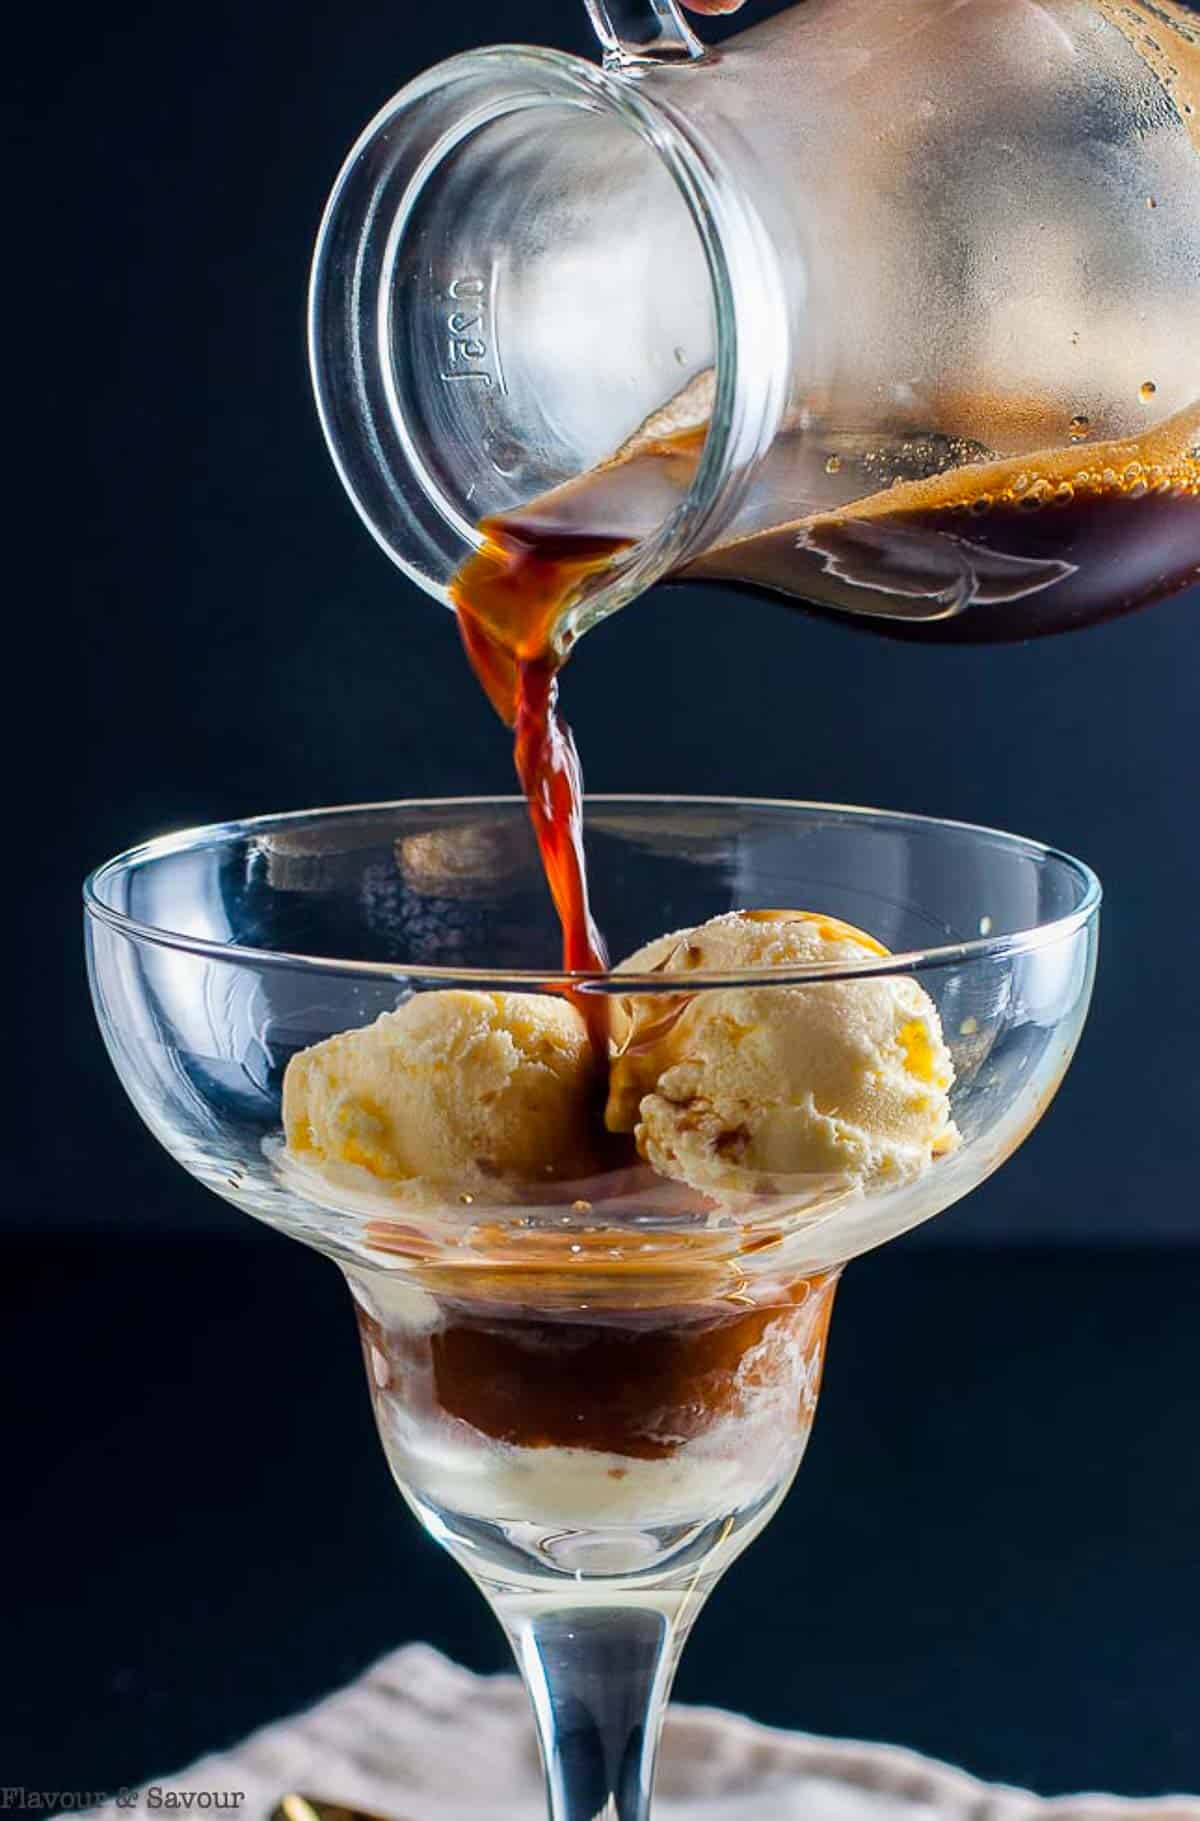 Pouring espresso on gelato to make an affogato coffee ice cream dessert